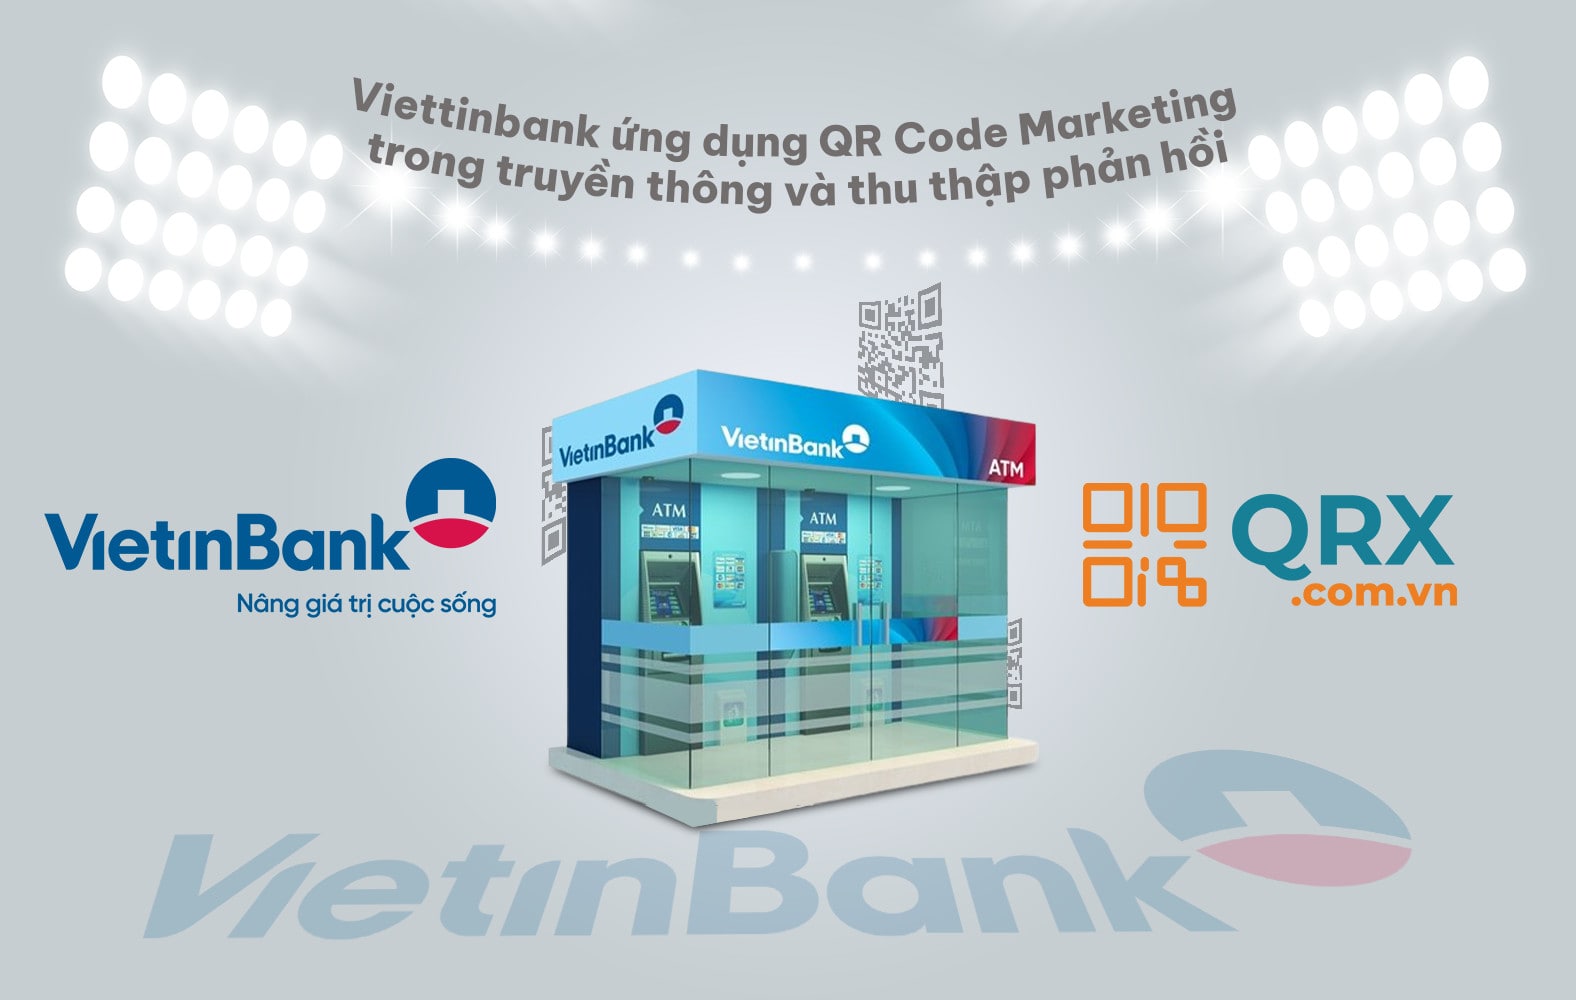 Vietinbank áp dung Qr Code marketing và Qr Code thu thập phản hồi của QRX